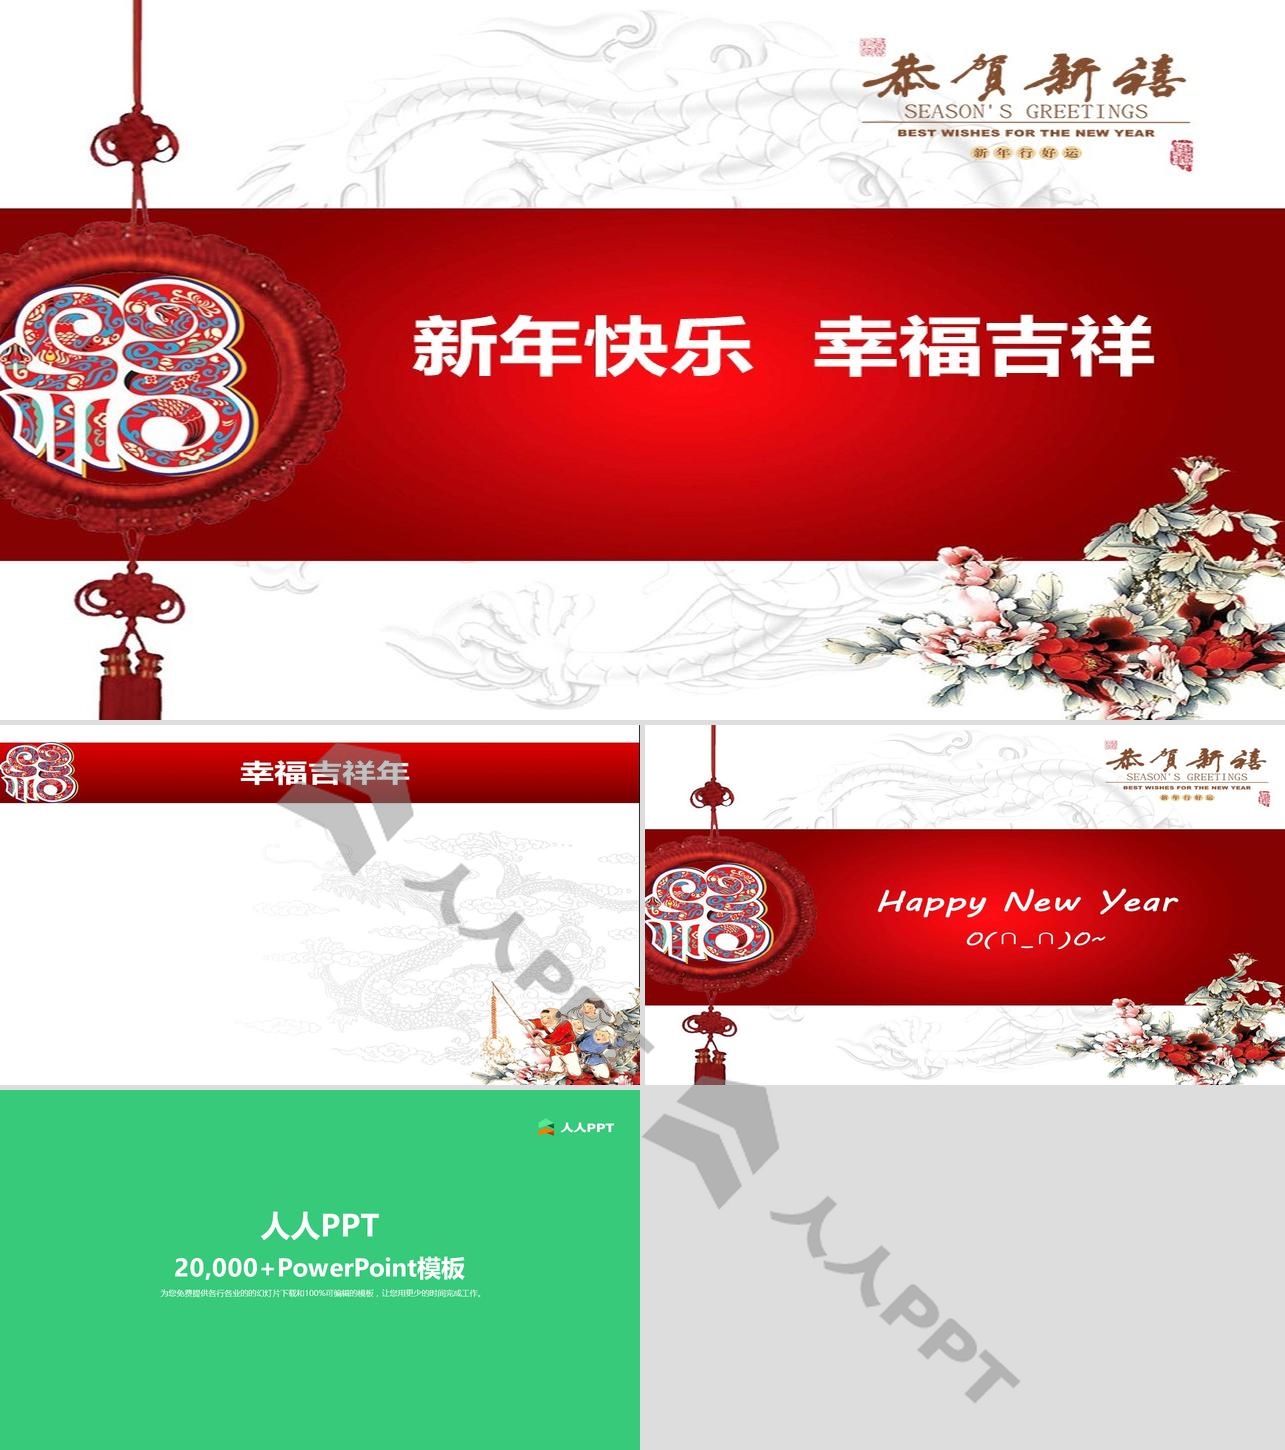 红色福字与白色背景的新年幻灯片模板长图